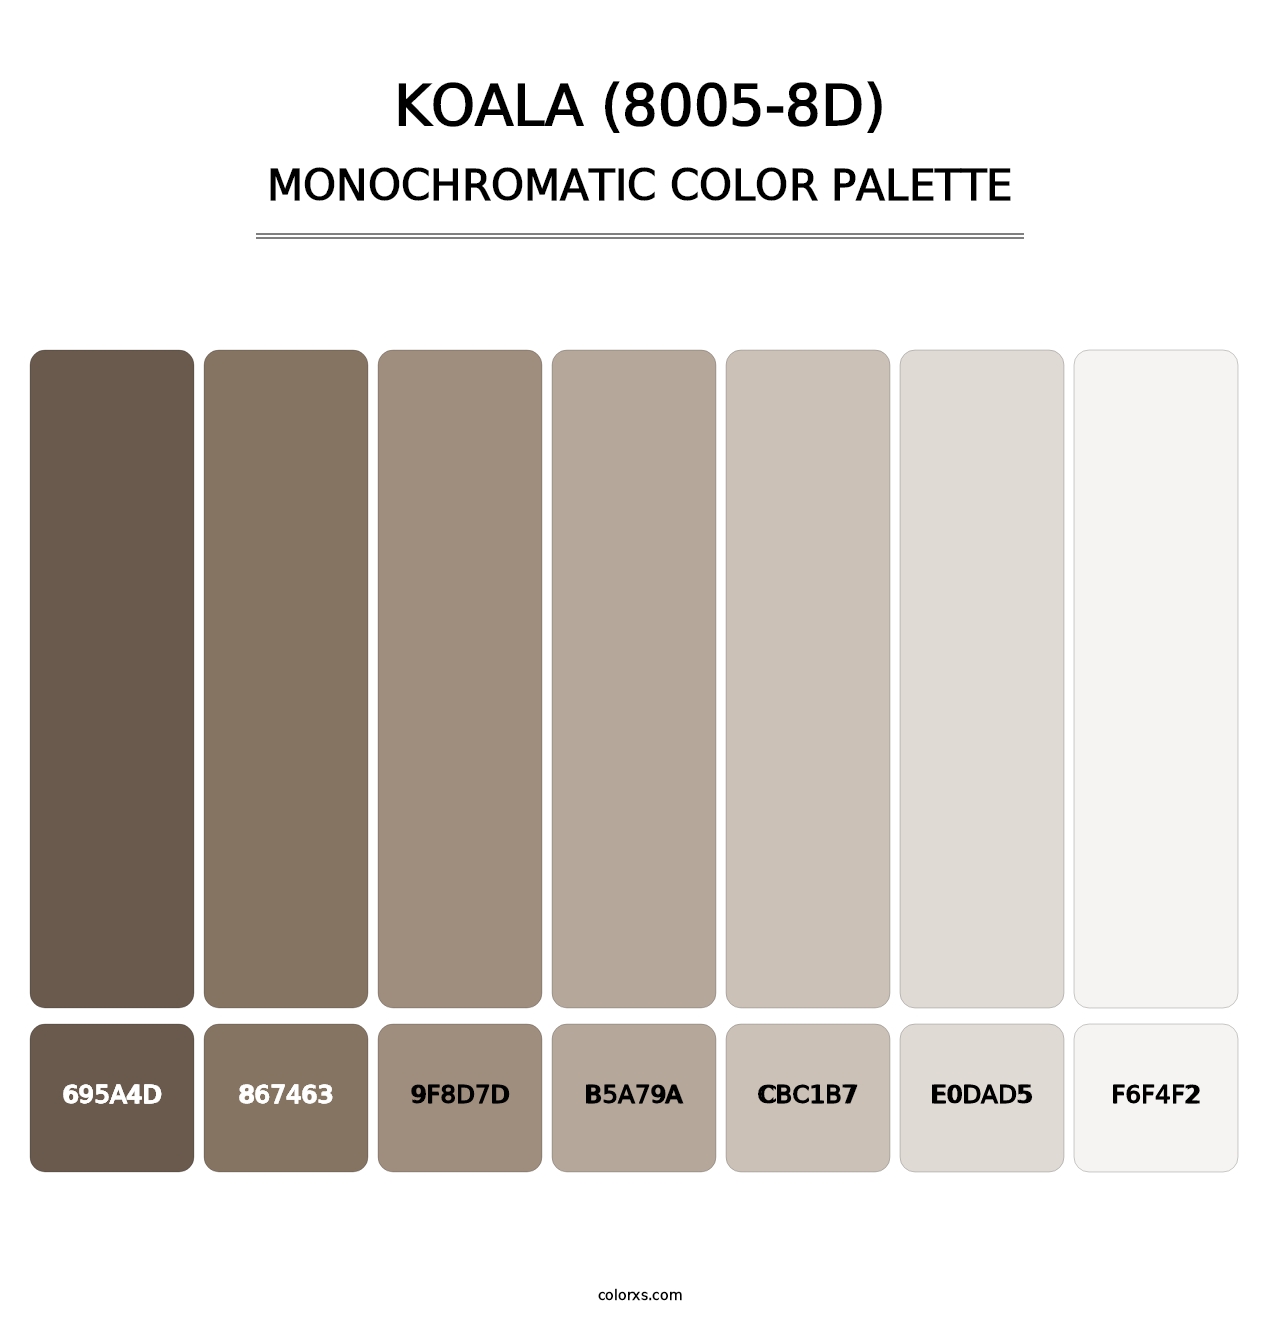 Koala (8005-8D) - Monochromatic Color Palette